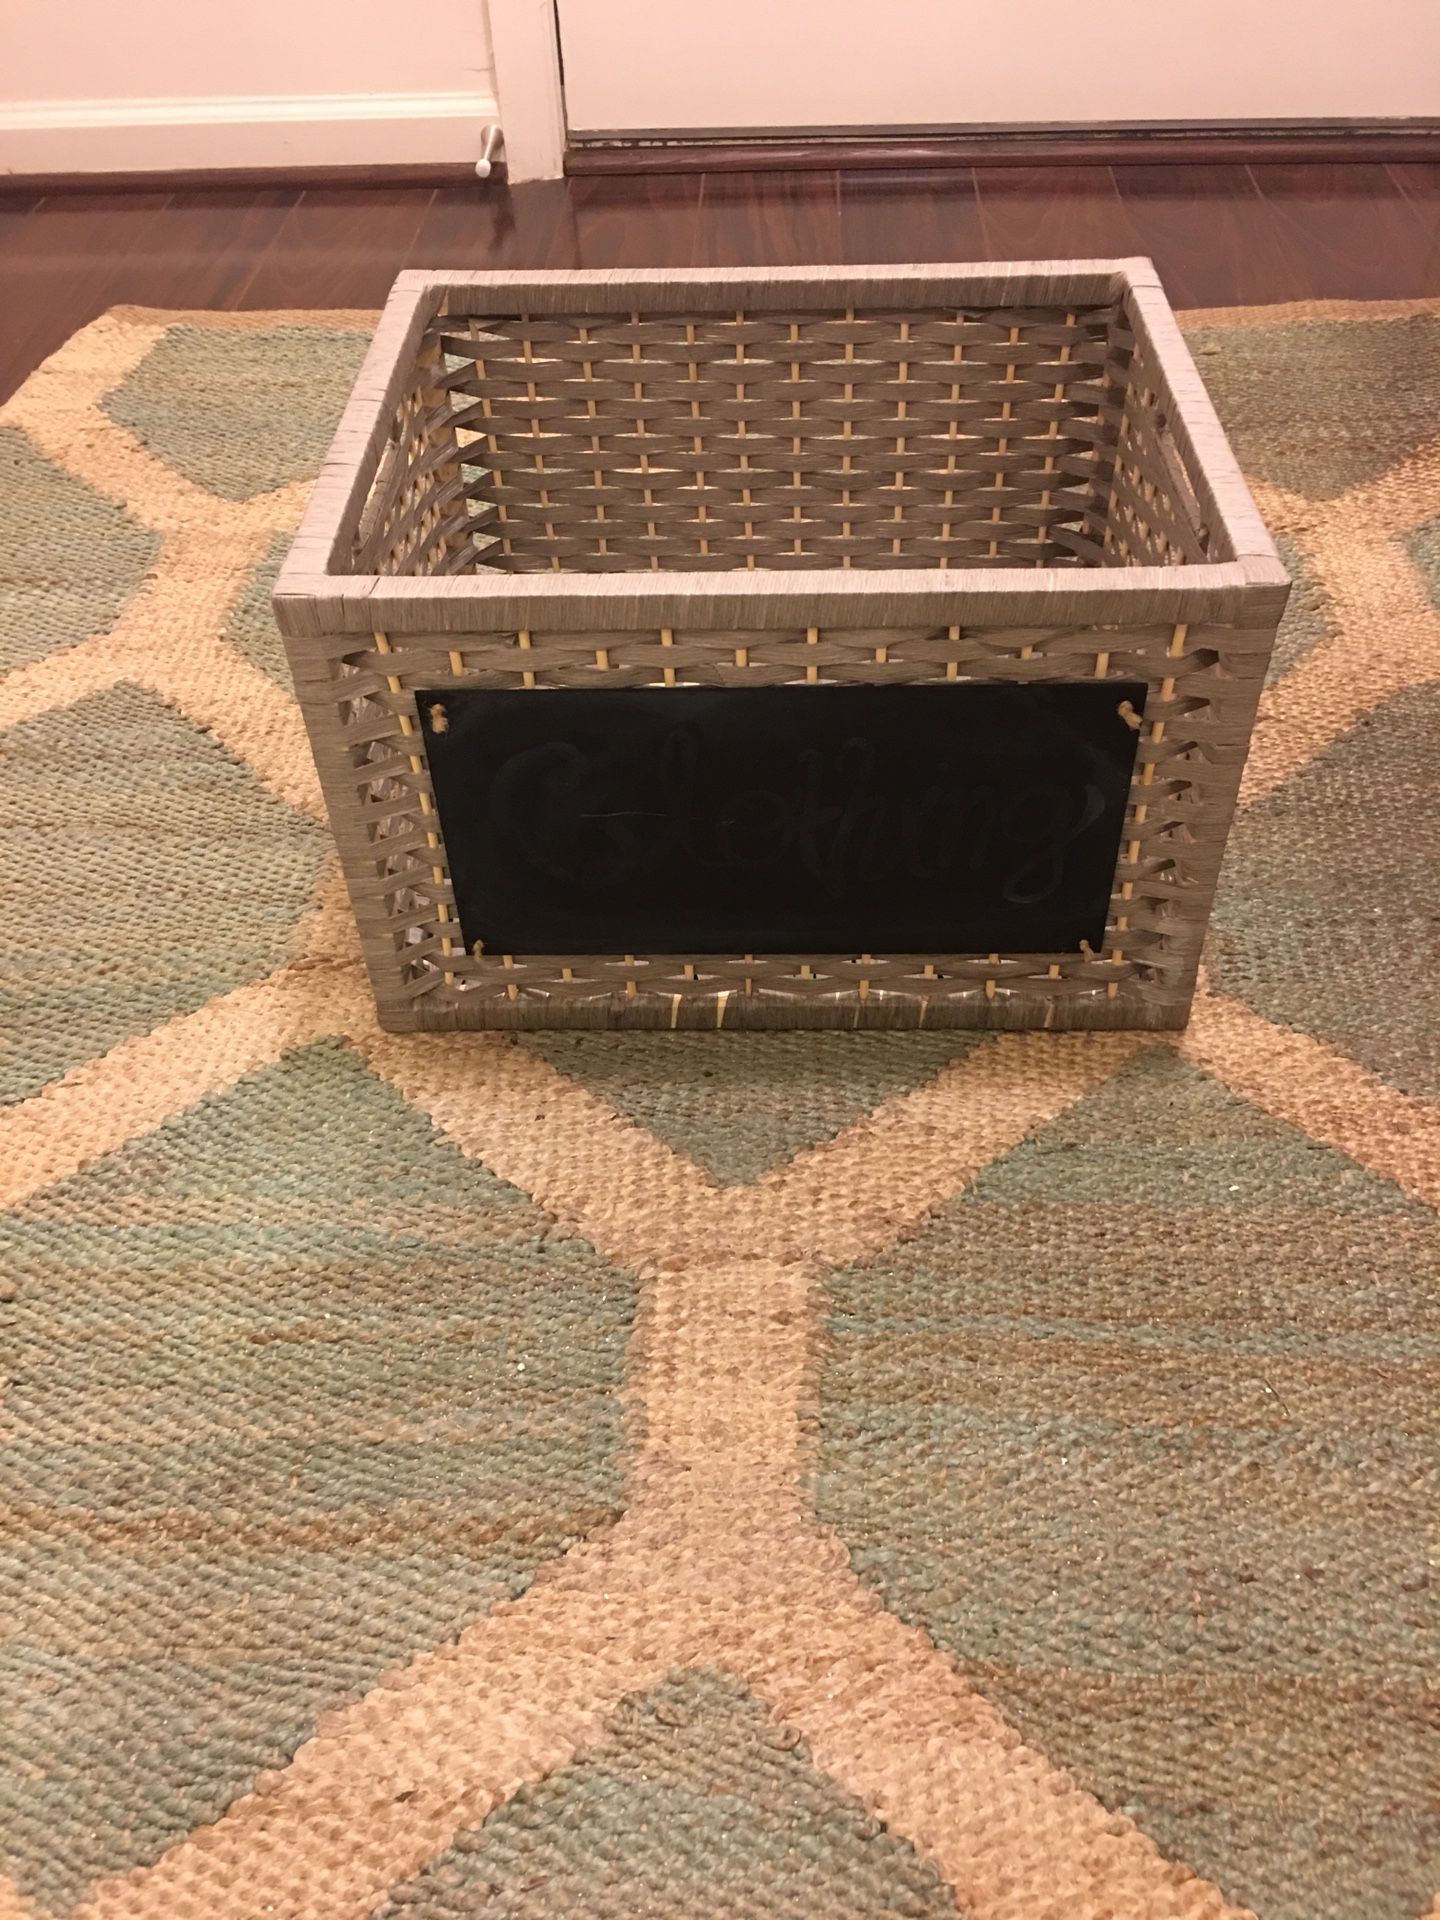 2 Chalkboard Storage Baskets ($6 ea. or $10 set)